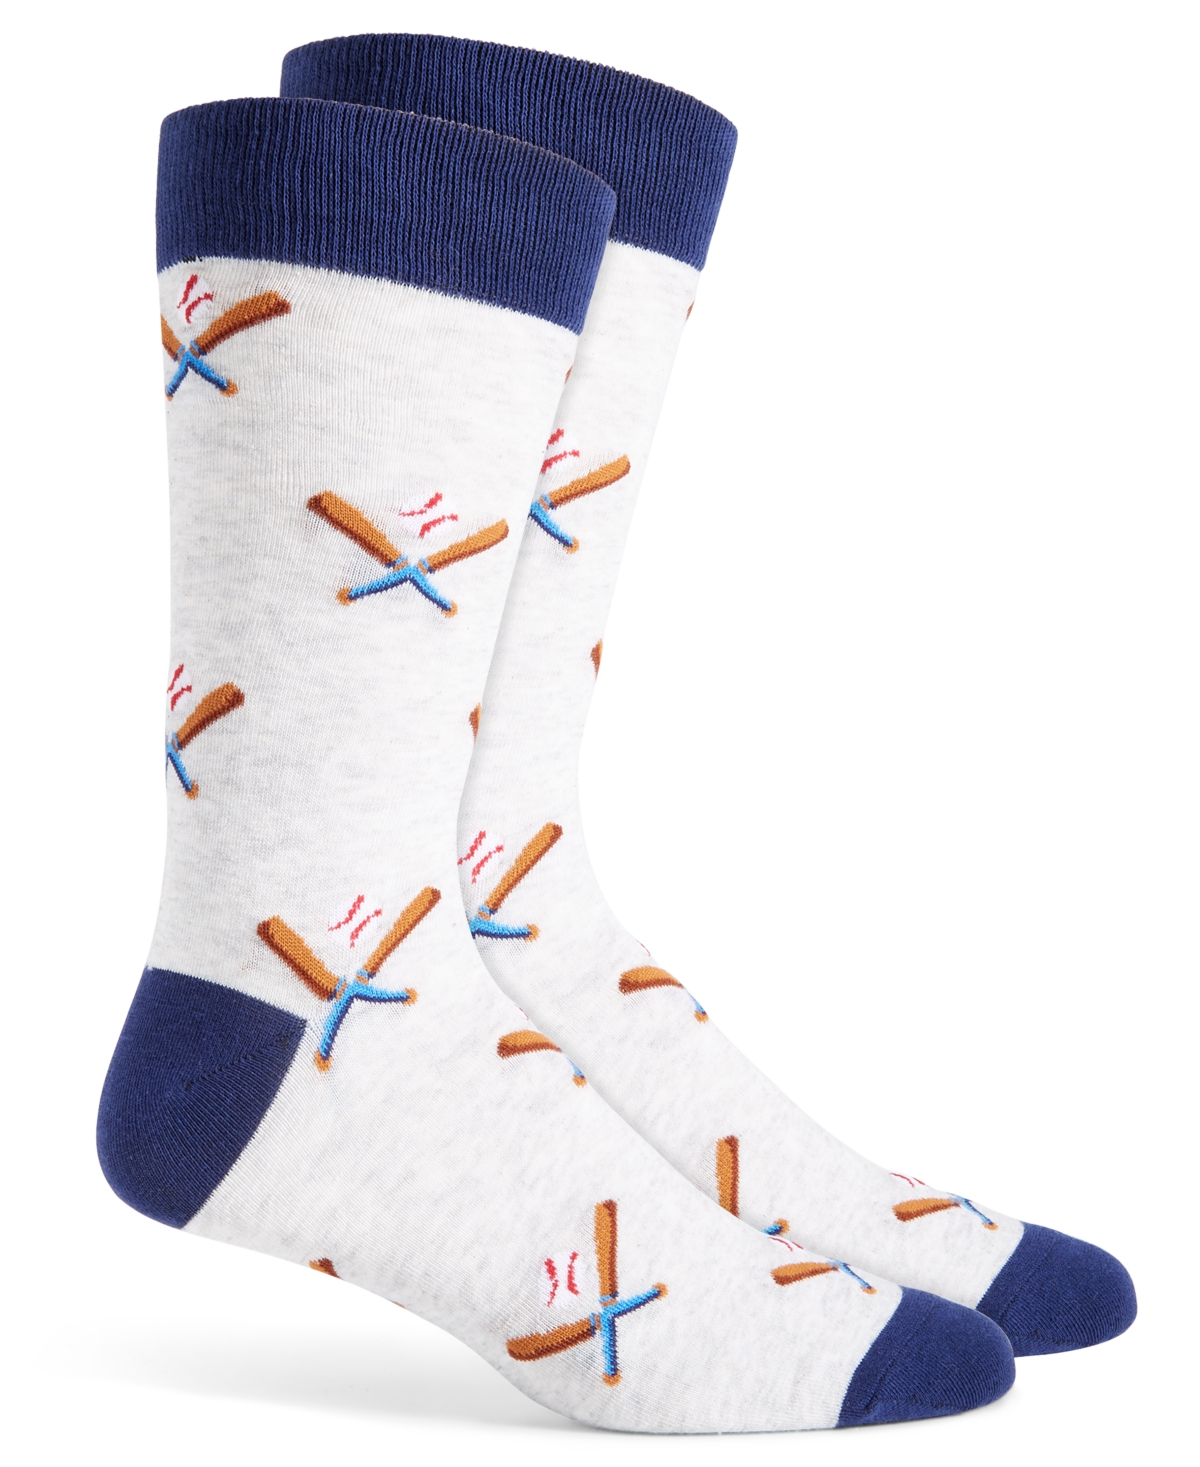 Men's Baseball Crew Socks, Created for Macy's - Grey